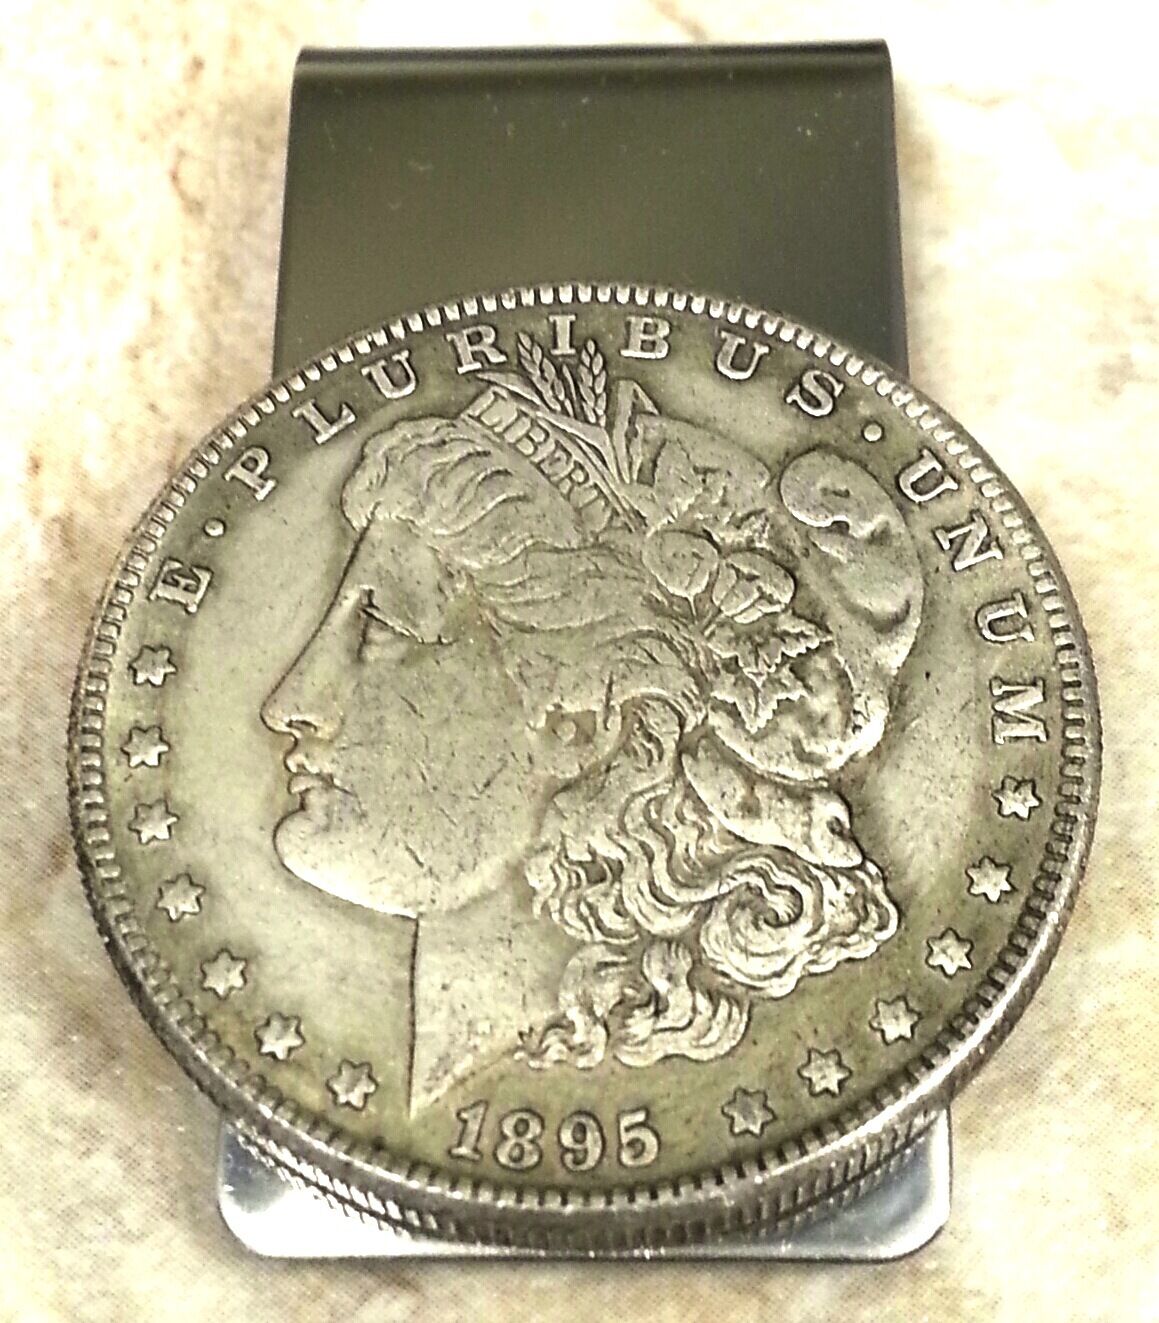 1895 Morgan Dollar Coin Token Not Silver Souvenir Money Clip + Gift Box!